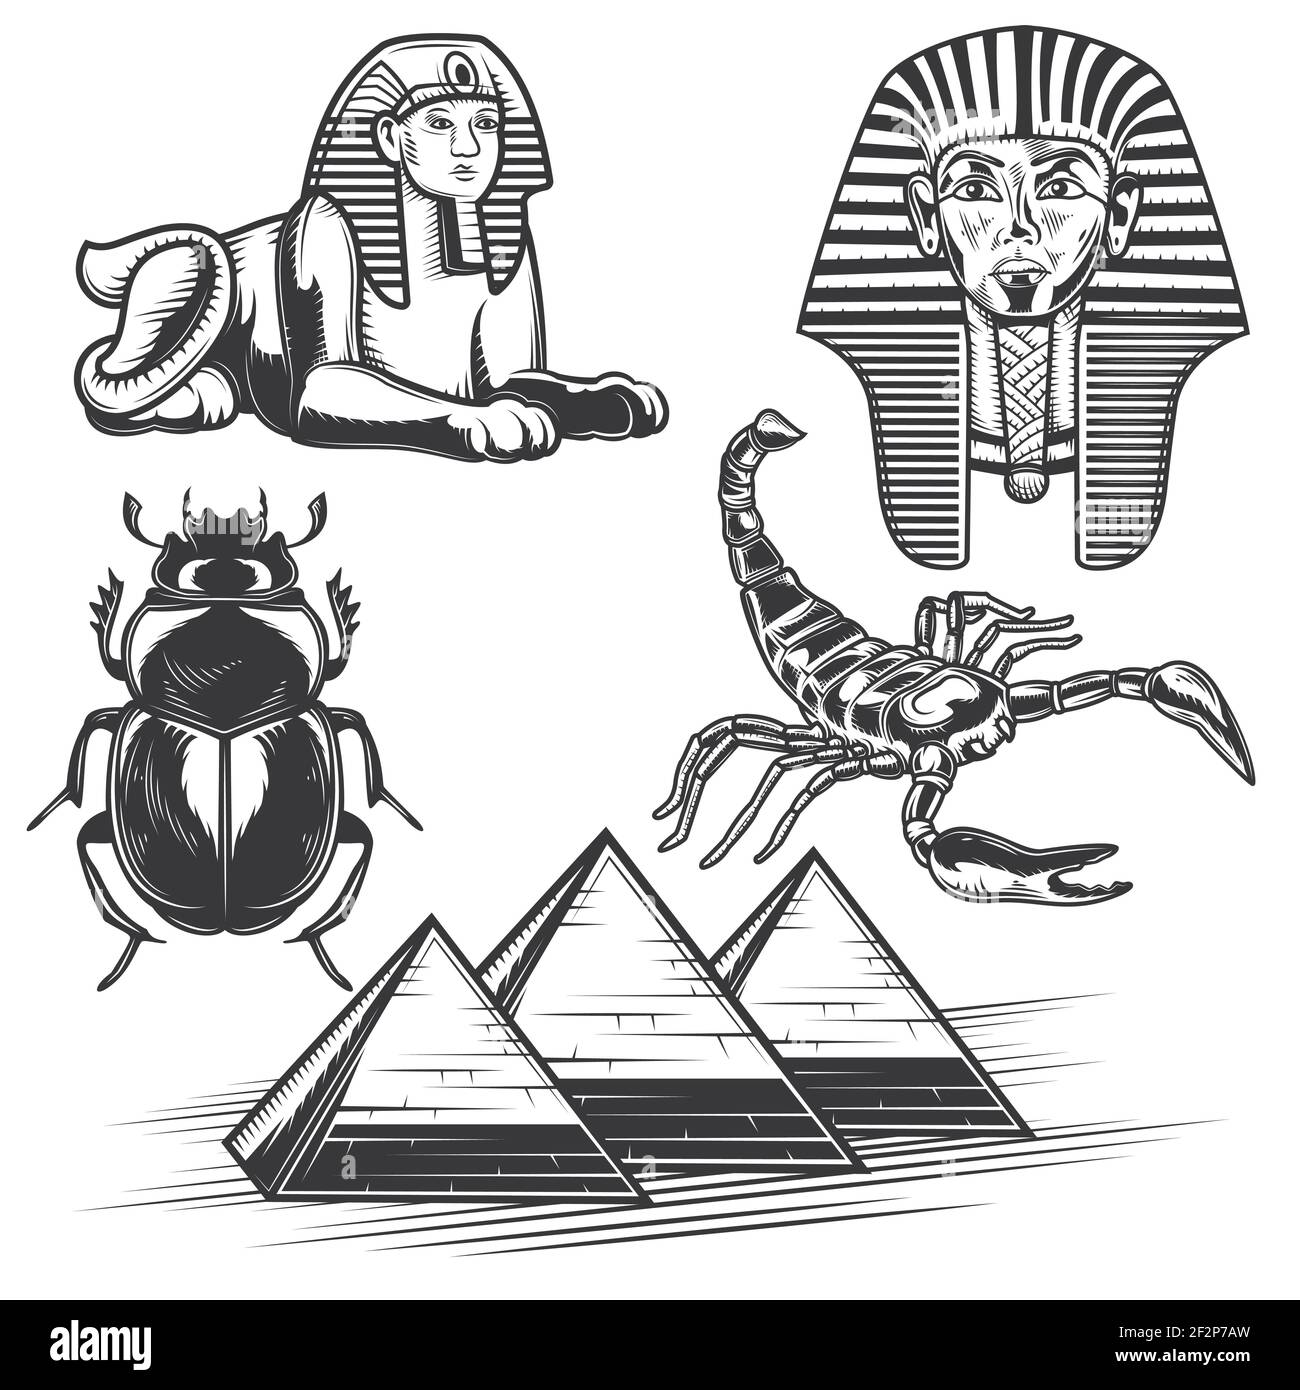 Set aus ägyptischen Elementen (Skorpion, Pharao, Pyramiden etc.) für die Erstellung Ihrer eigenen Abzeichen, Logos, Etiketten, Plakate etc. Isoliert auf weiß. Stock Vektor